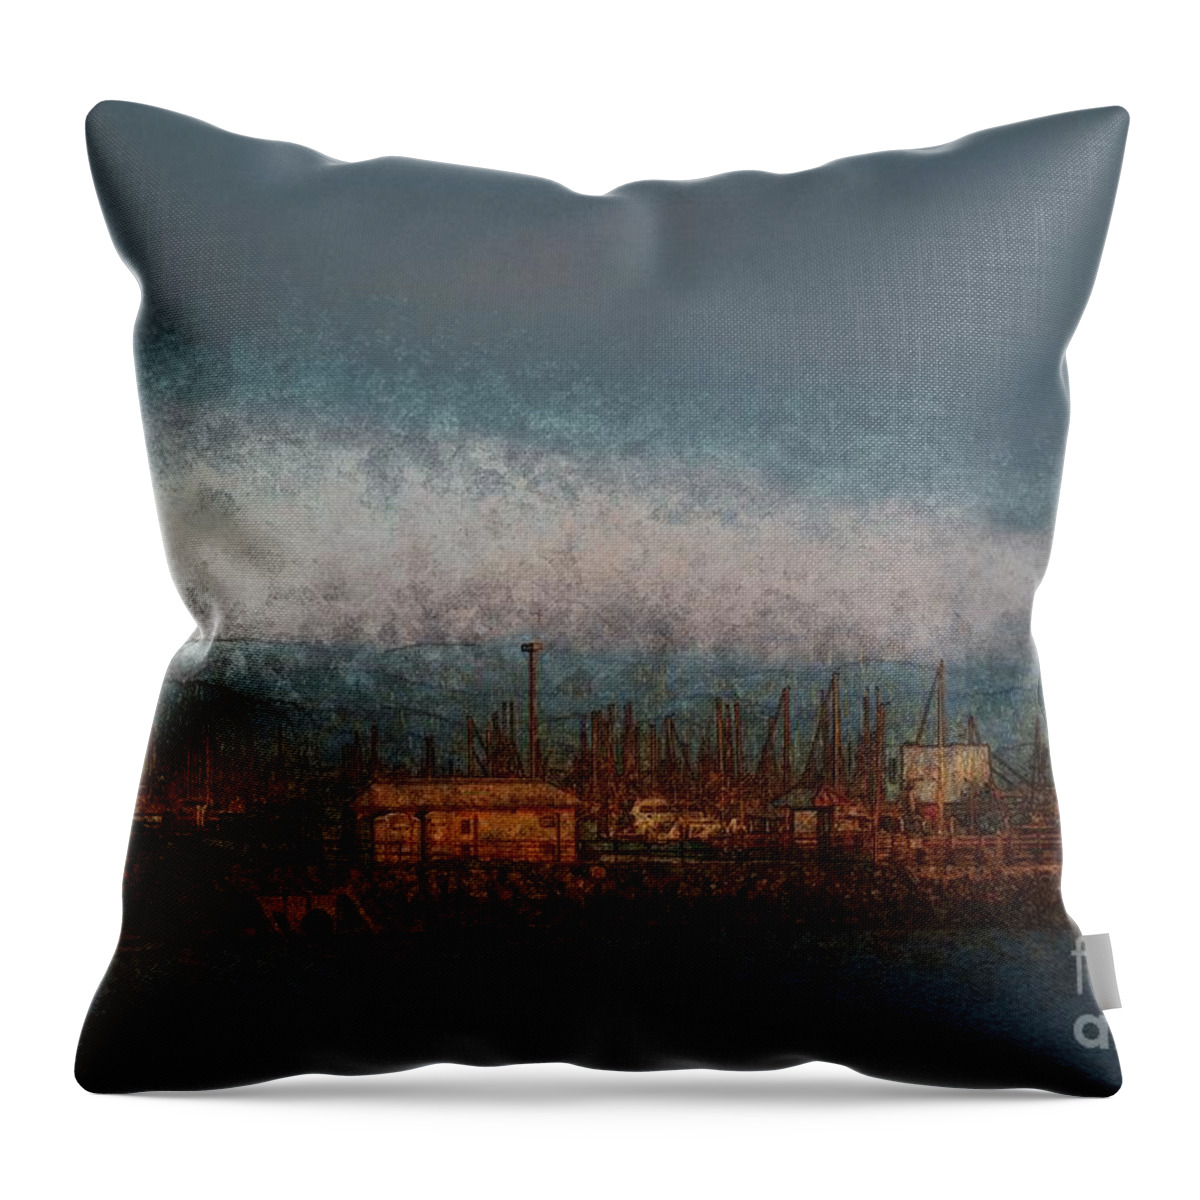 Marina Throw Pillow featuring the photograph Marina at Sunset by Katherine Erickson